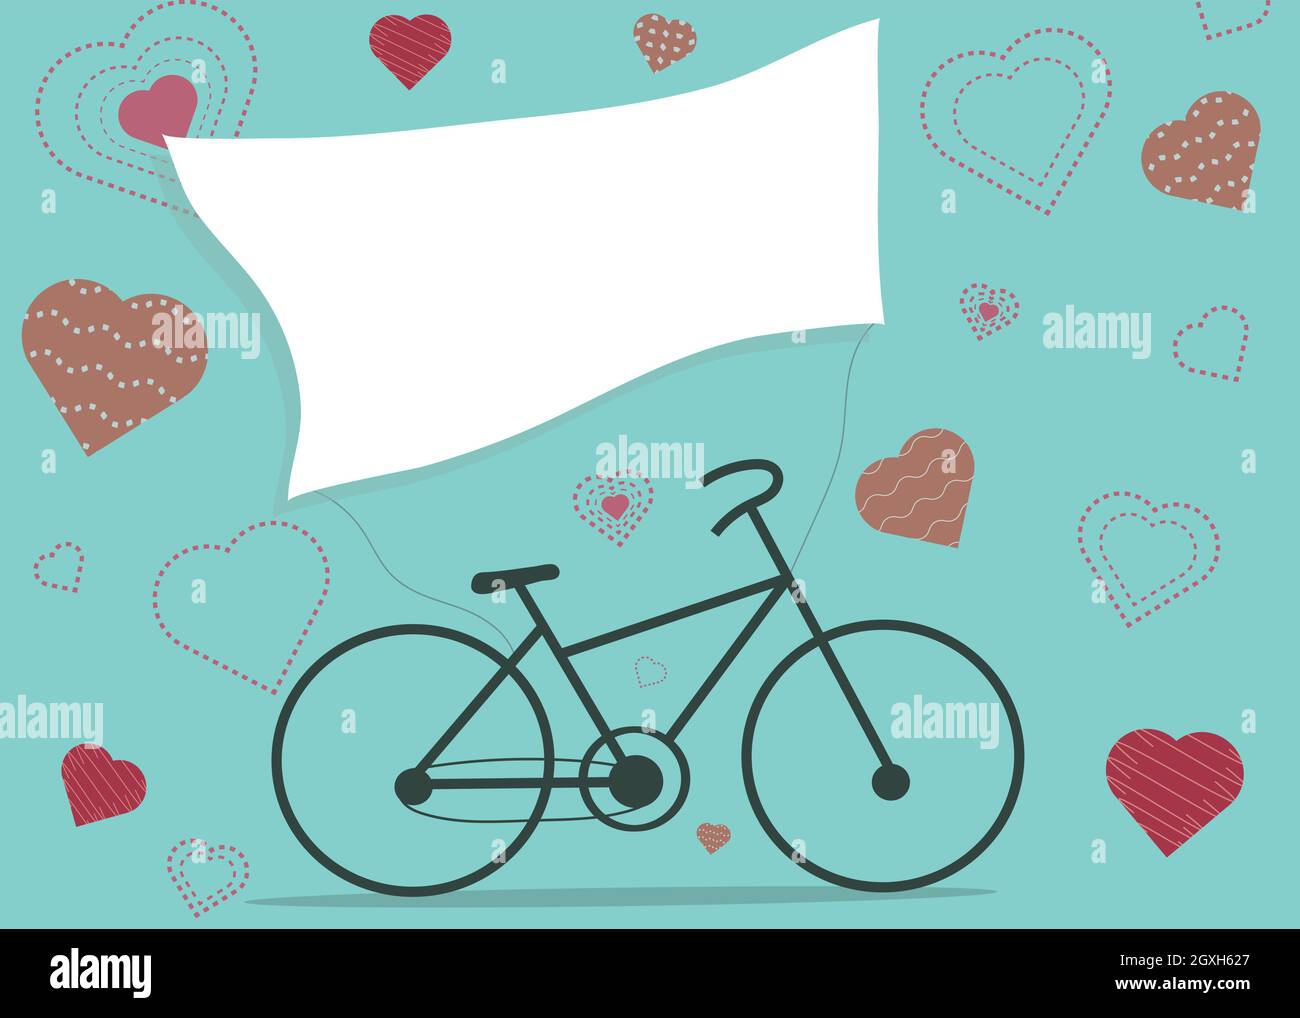 Ein Fahrrad-Design mit Herz und weißem Verkaufsbanner auf blauem Hintergrund. Glückliche Valentinstag Vektor-Illustration. Stockfoto